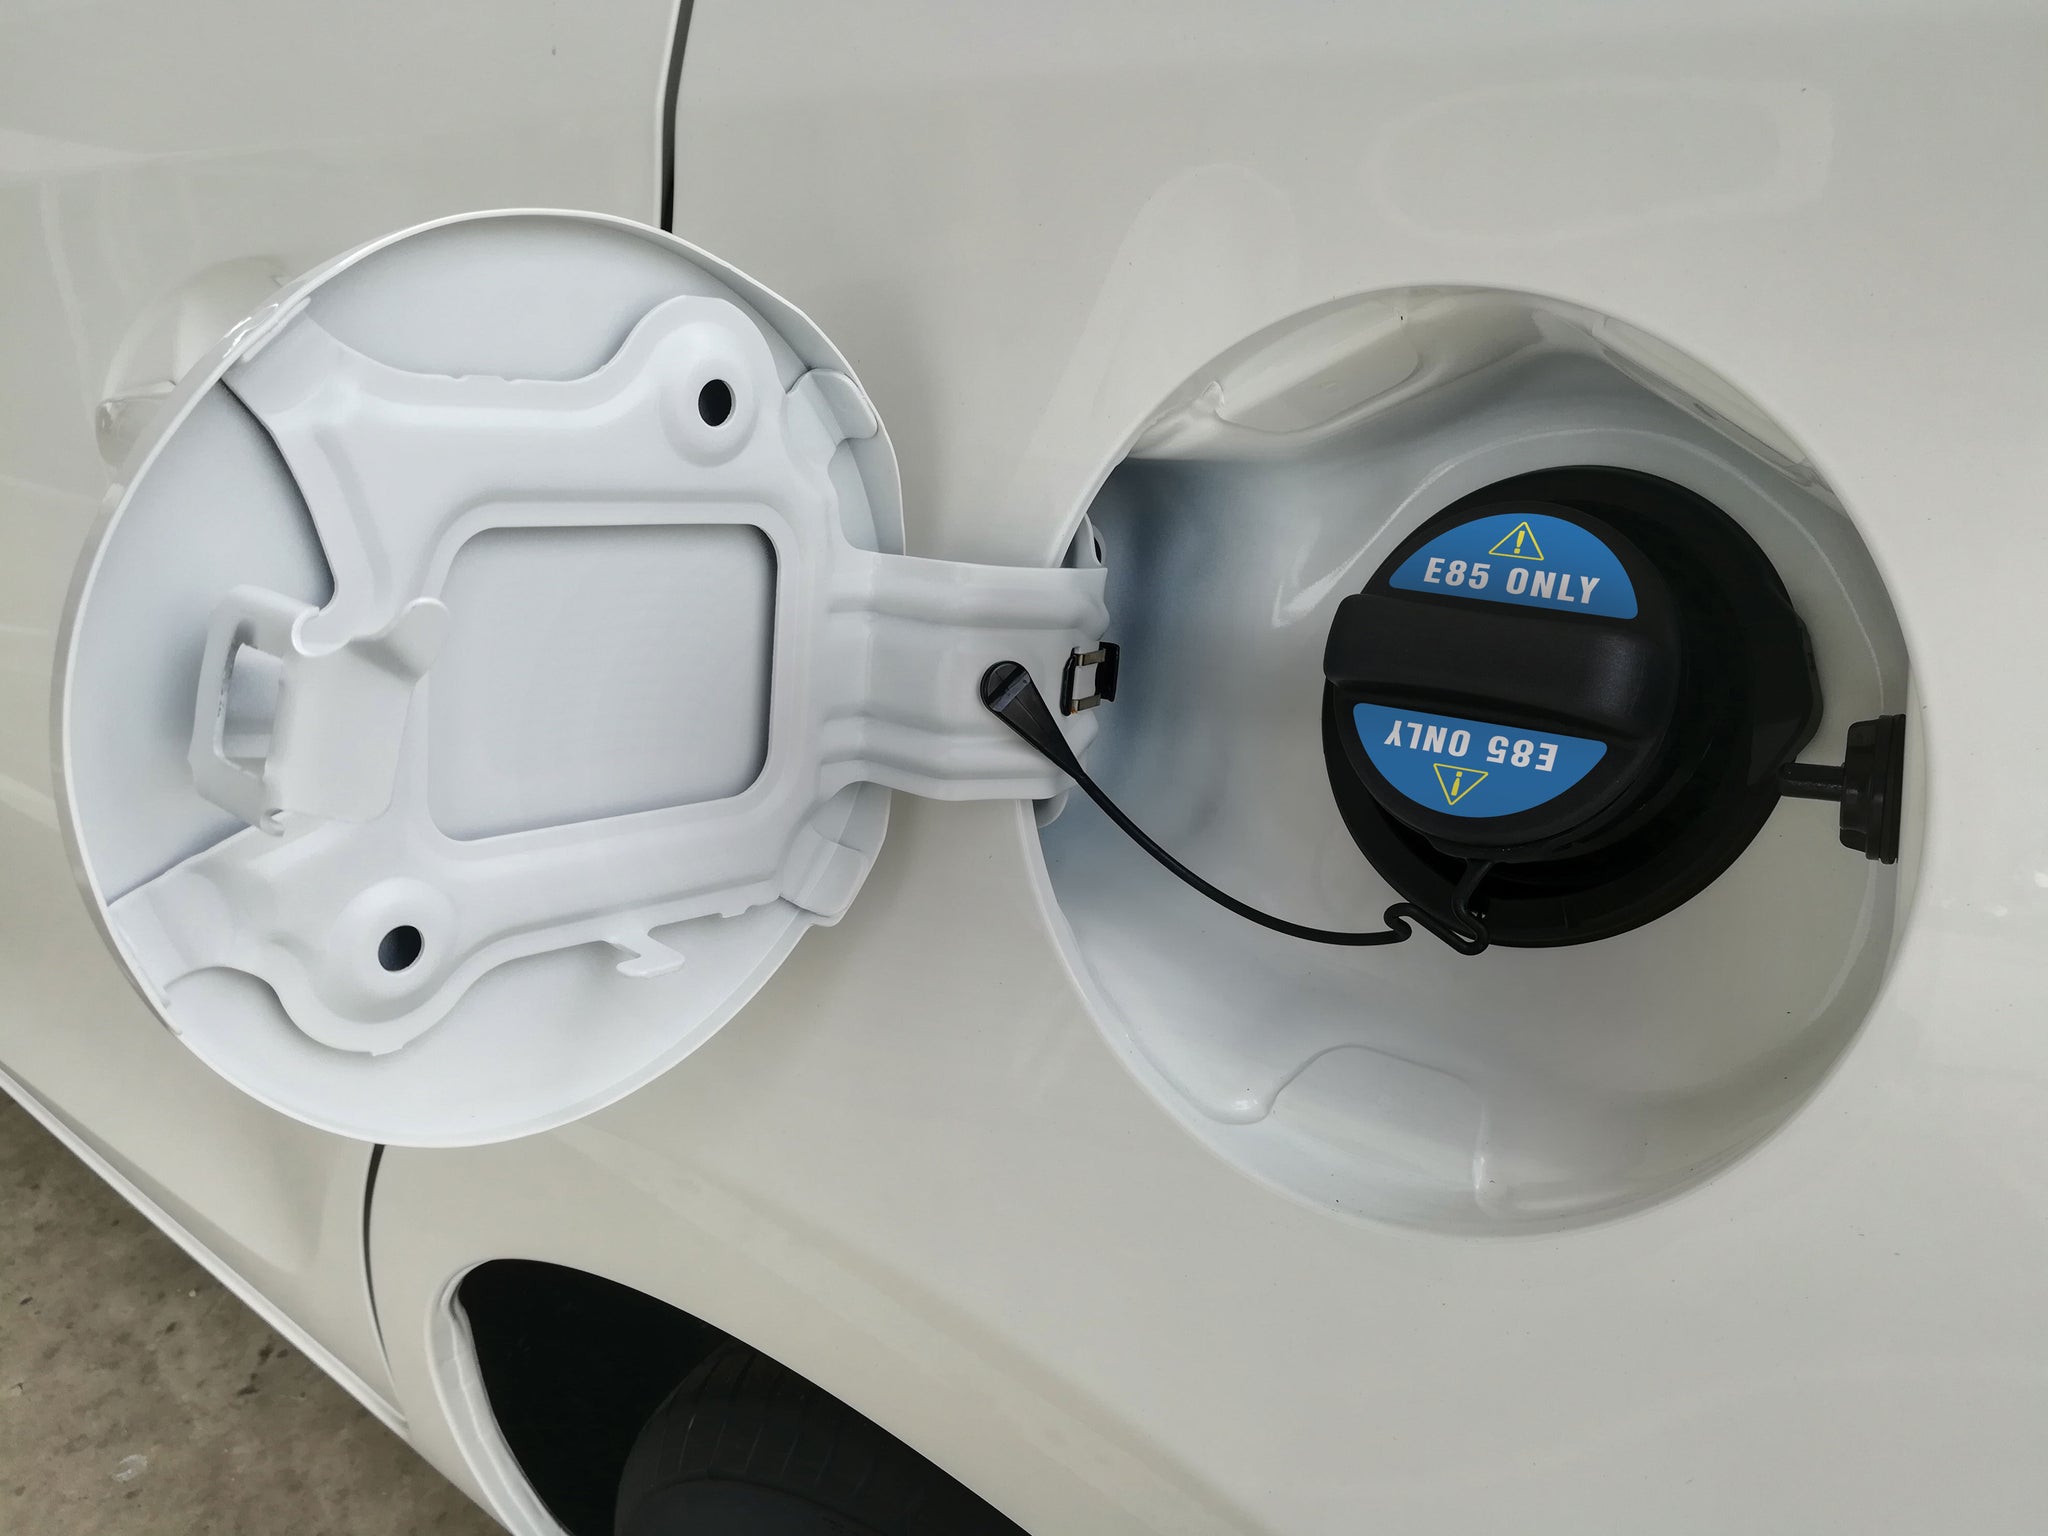 E85 Gas Cap Sticker | Flex Fuel Gas Cap Label by Fuel Stickers | 1 Pair | USA Made